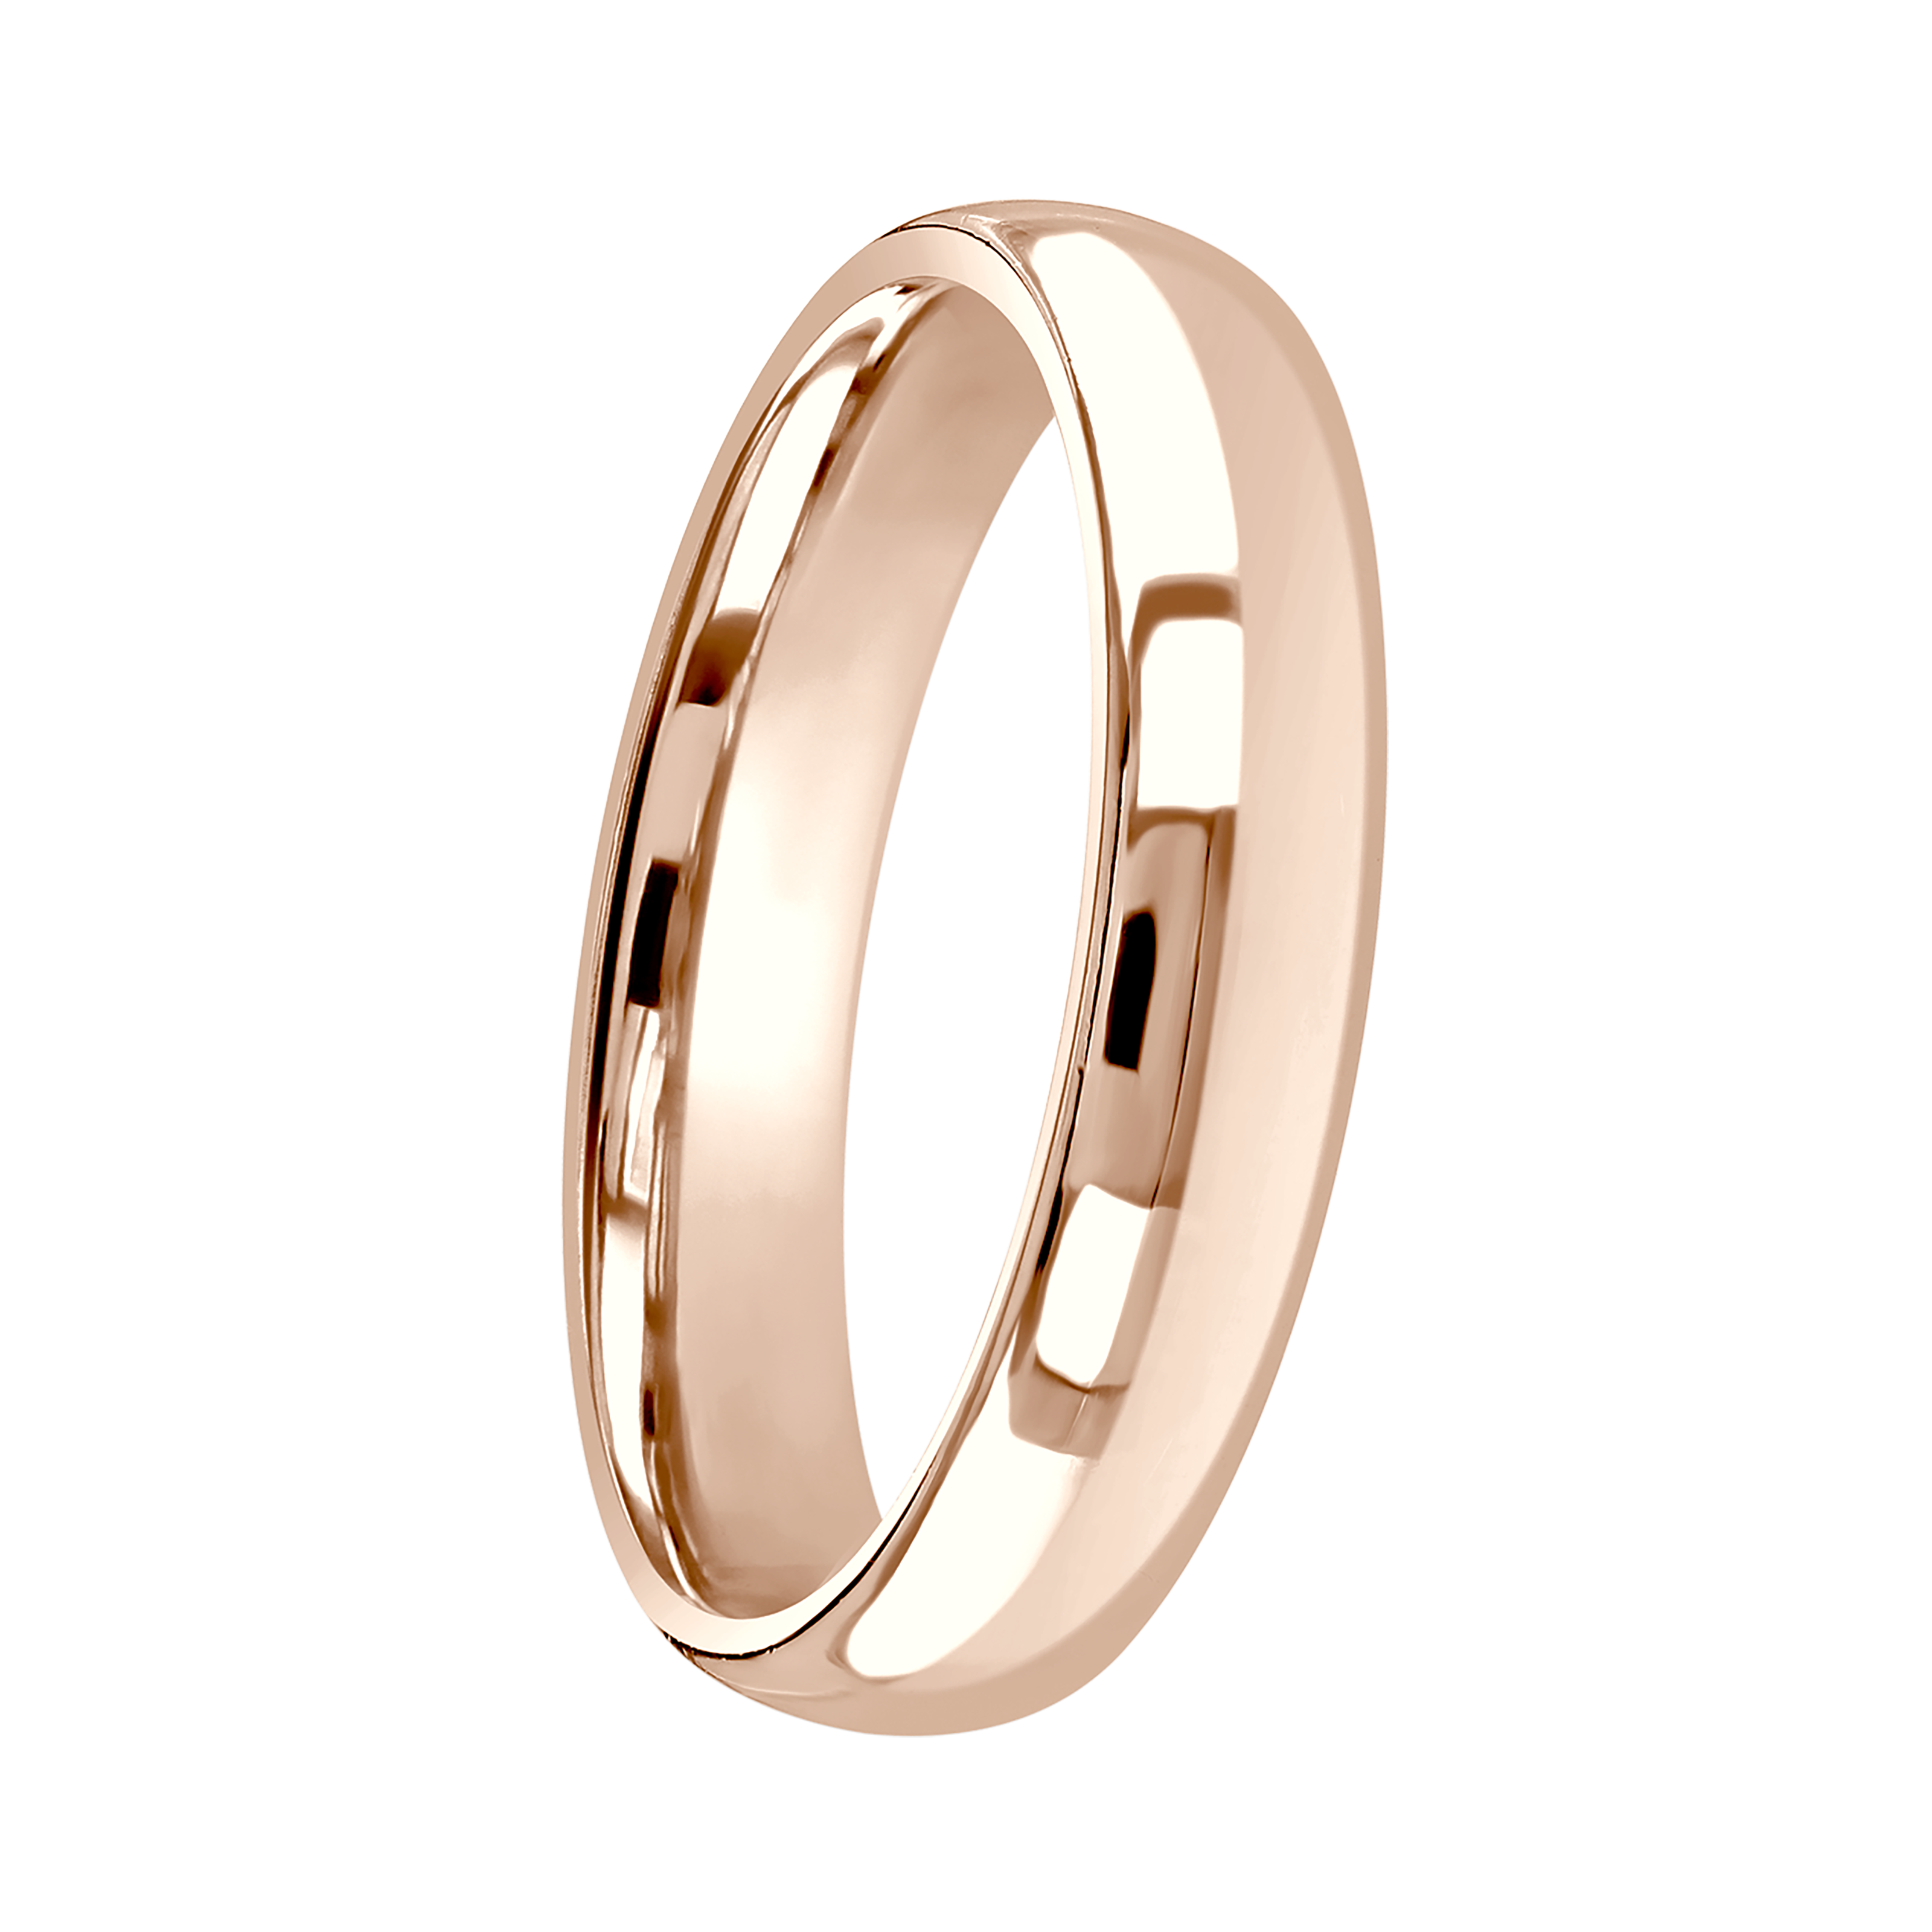 Unisex Rose and white gold diamond set wedding ring set